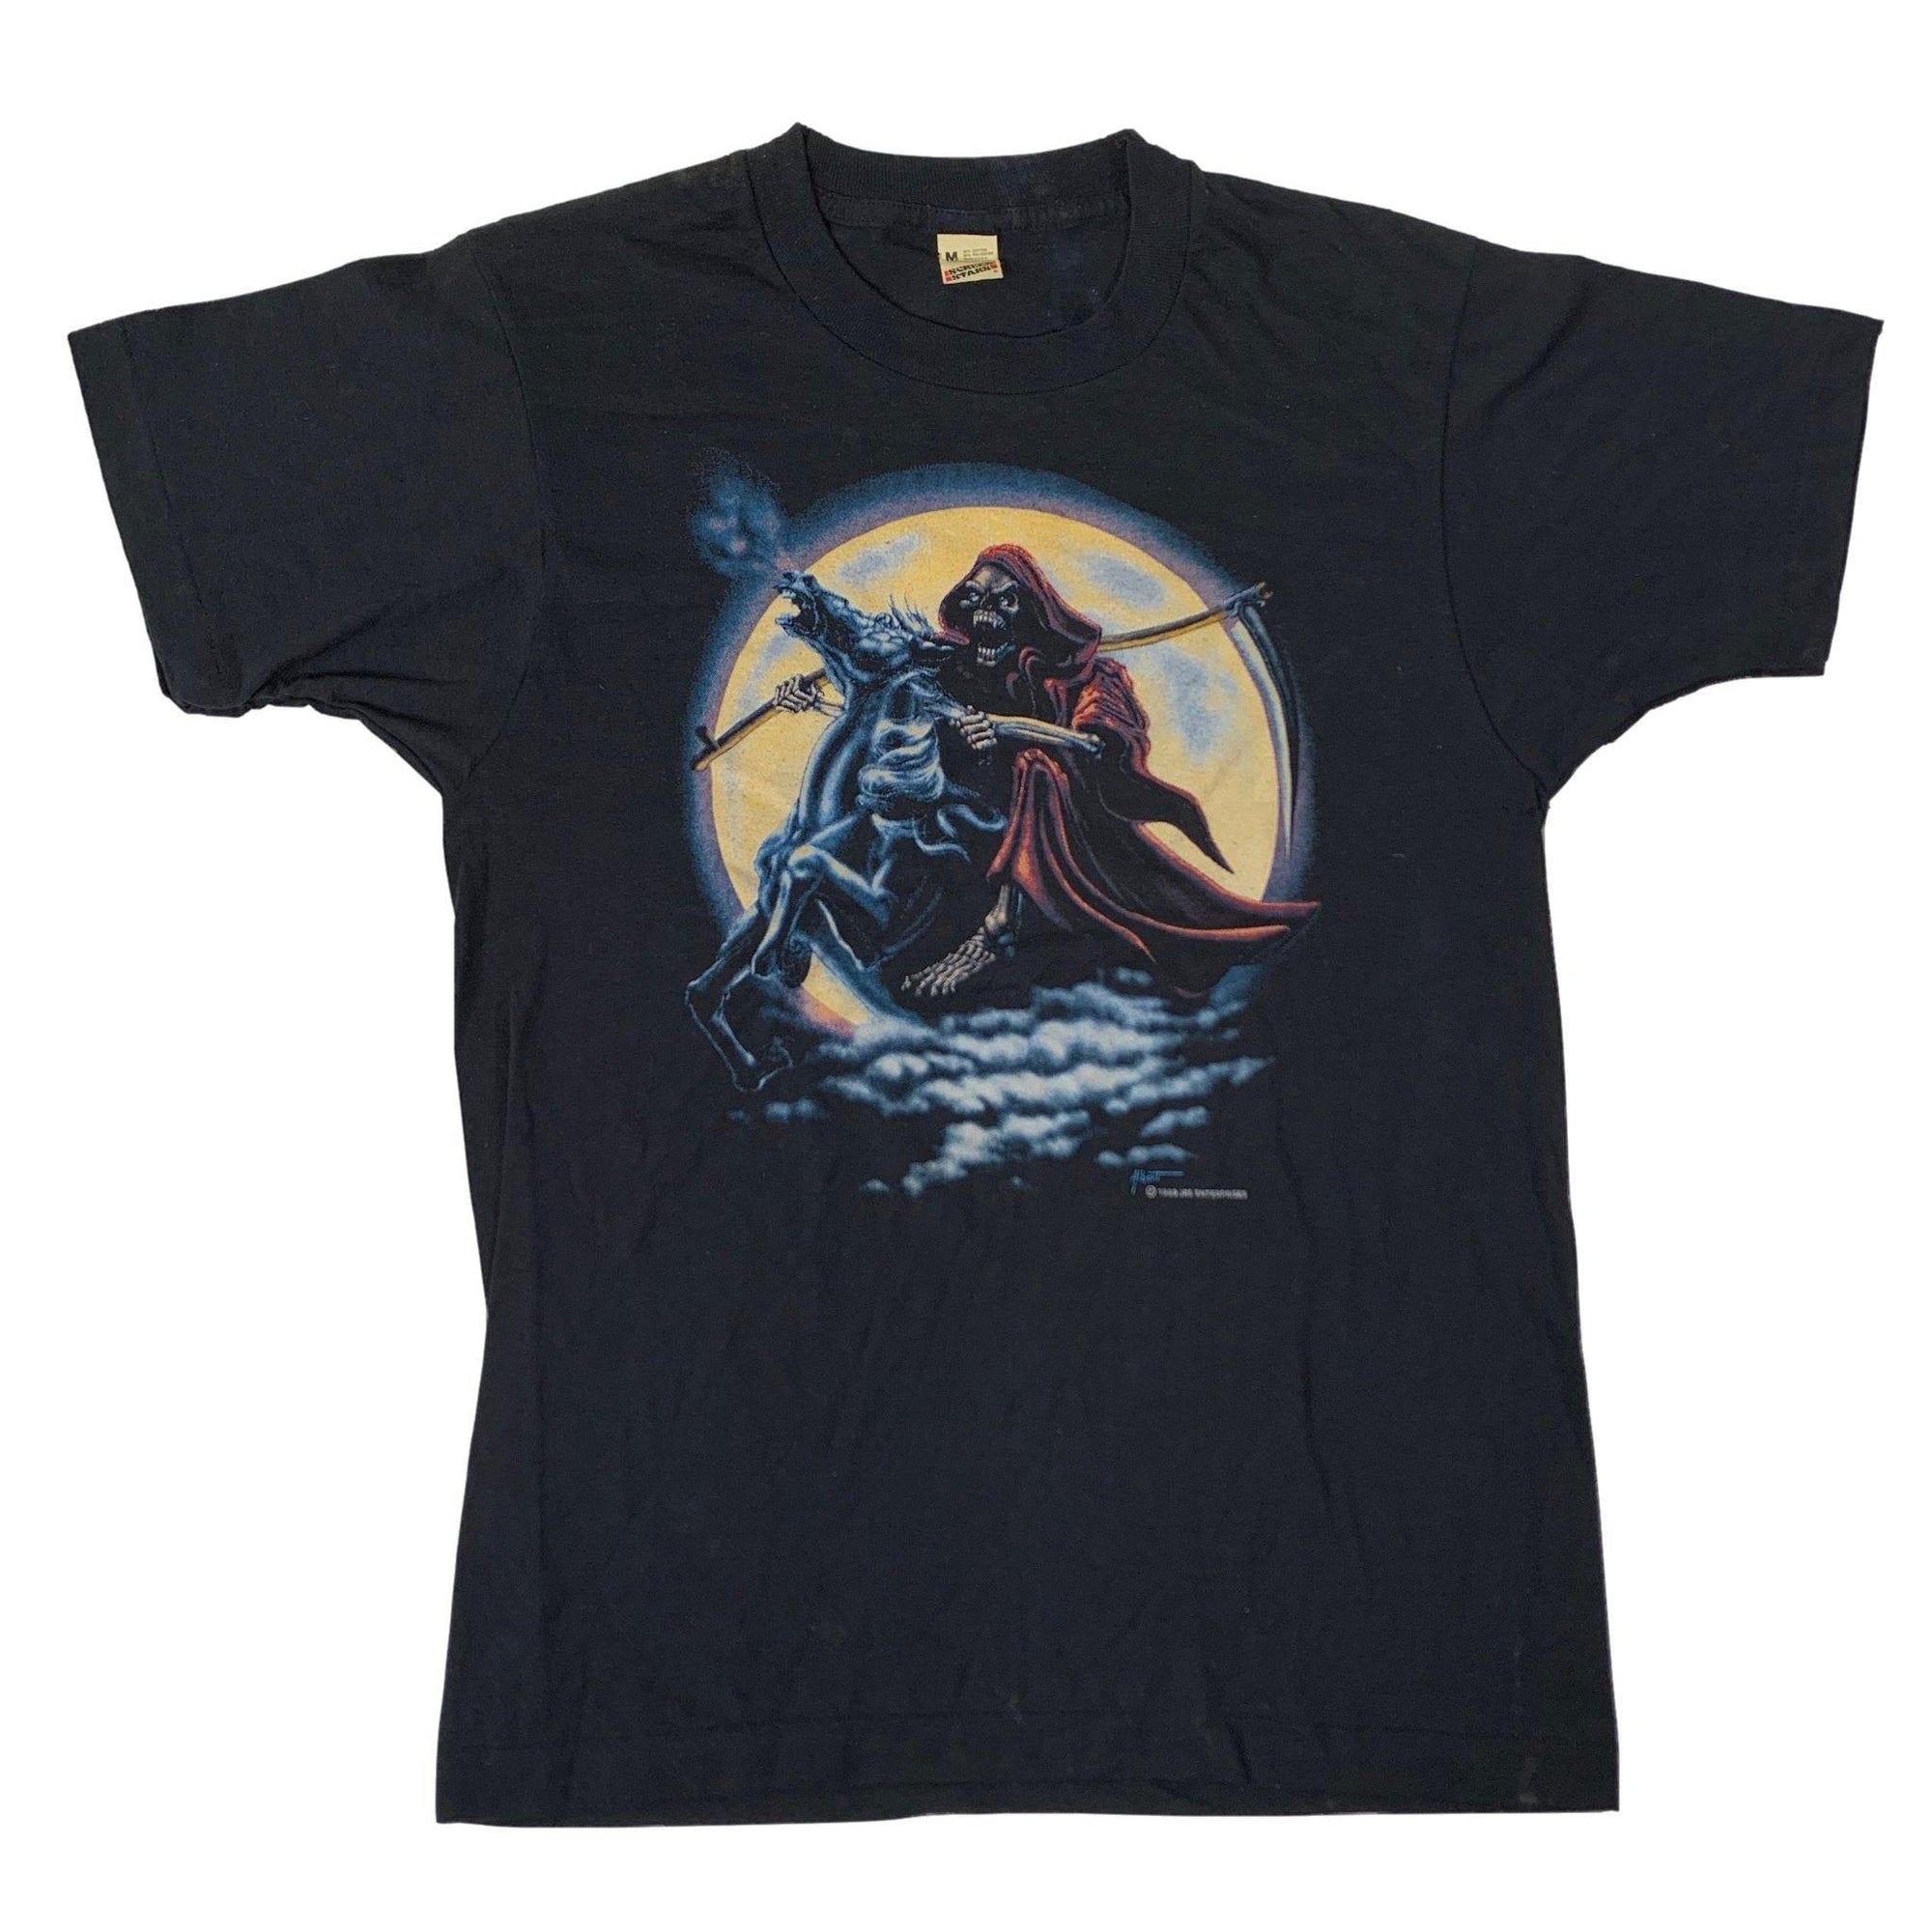 Vintage Sci-Fi "Reaper" T-Shirt - jointcustodydc